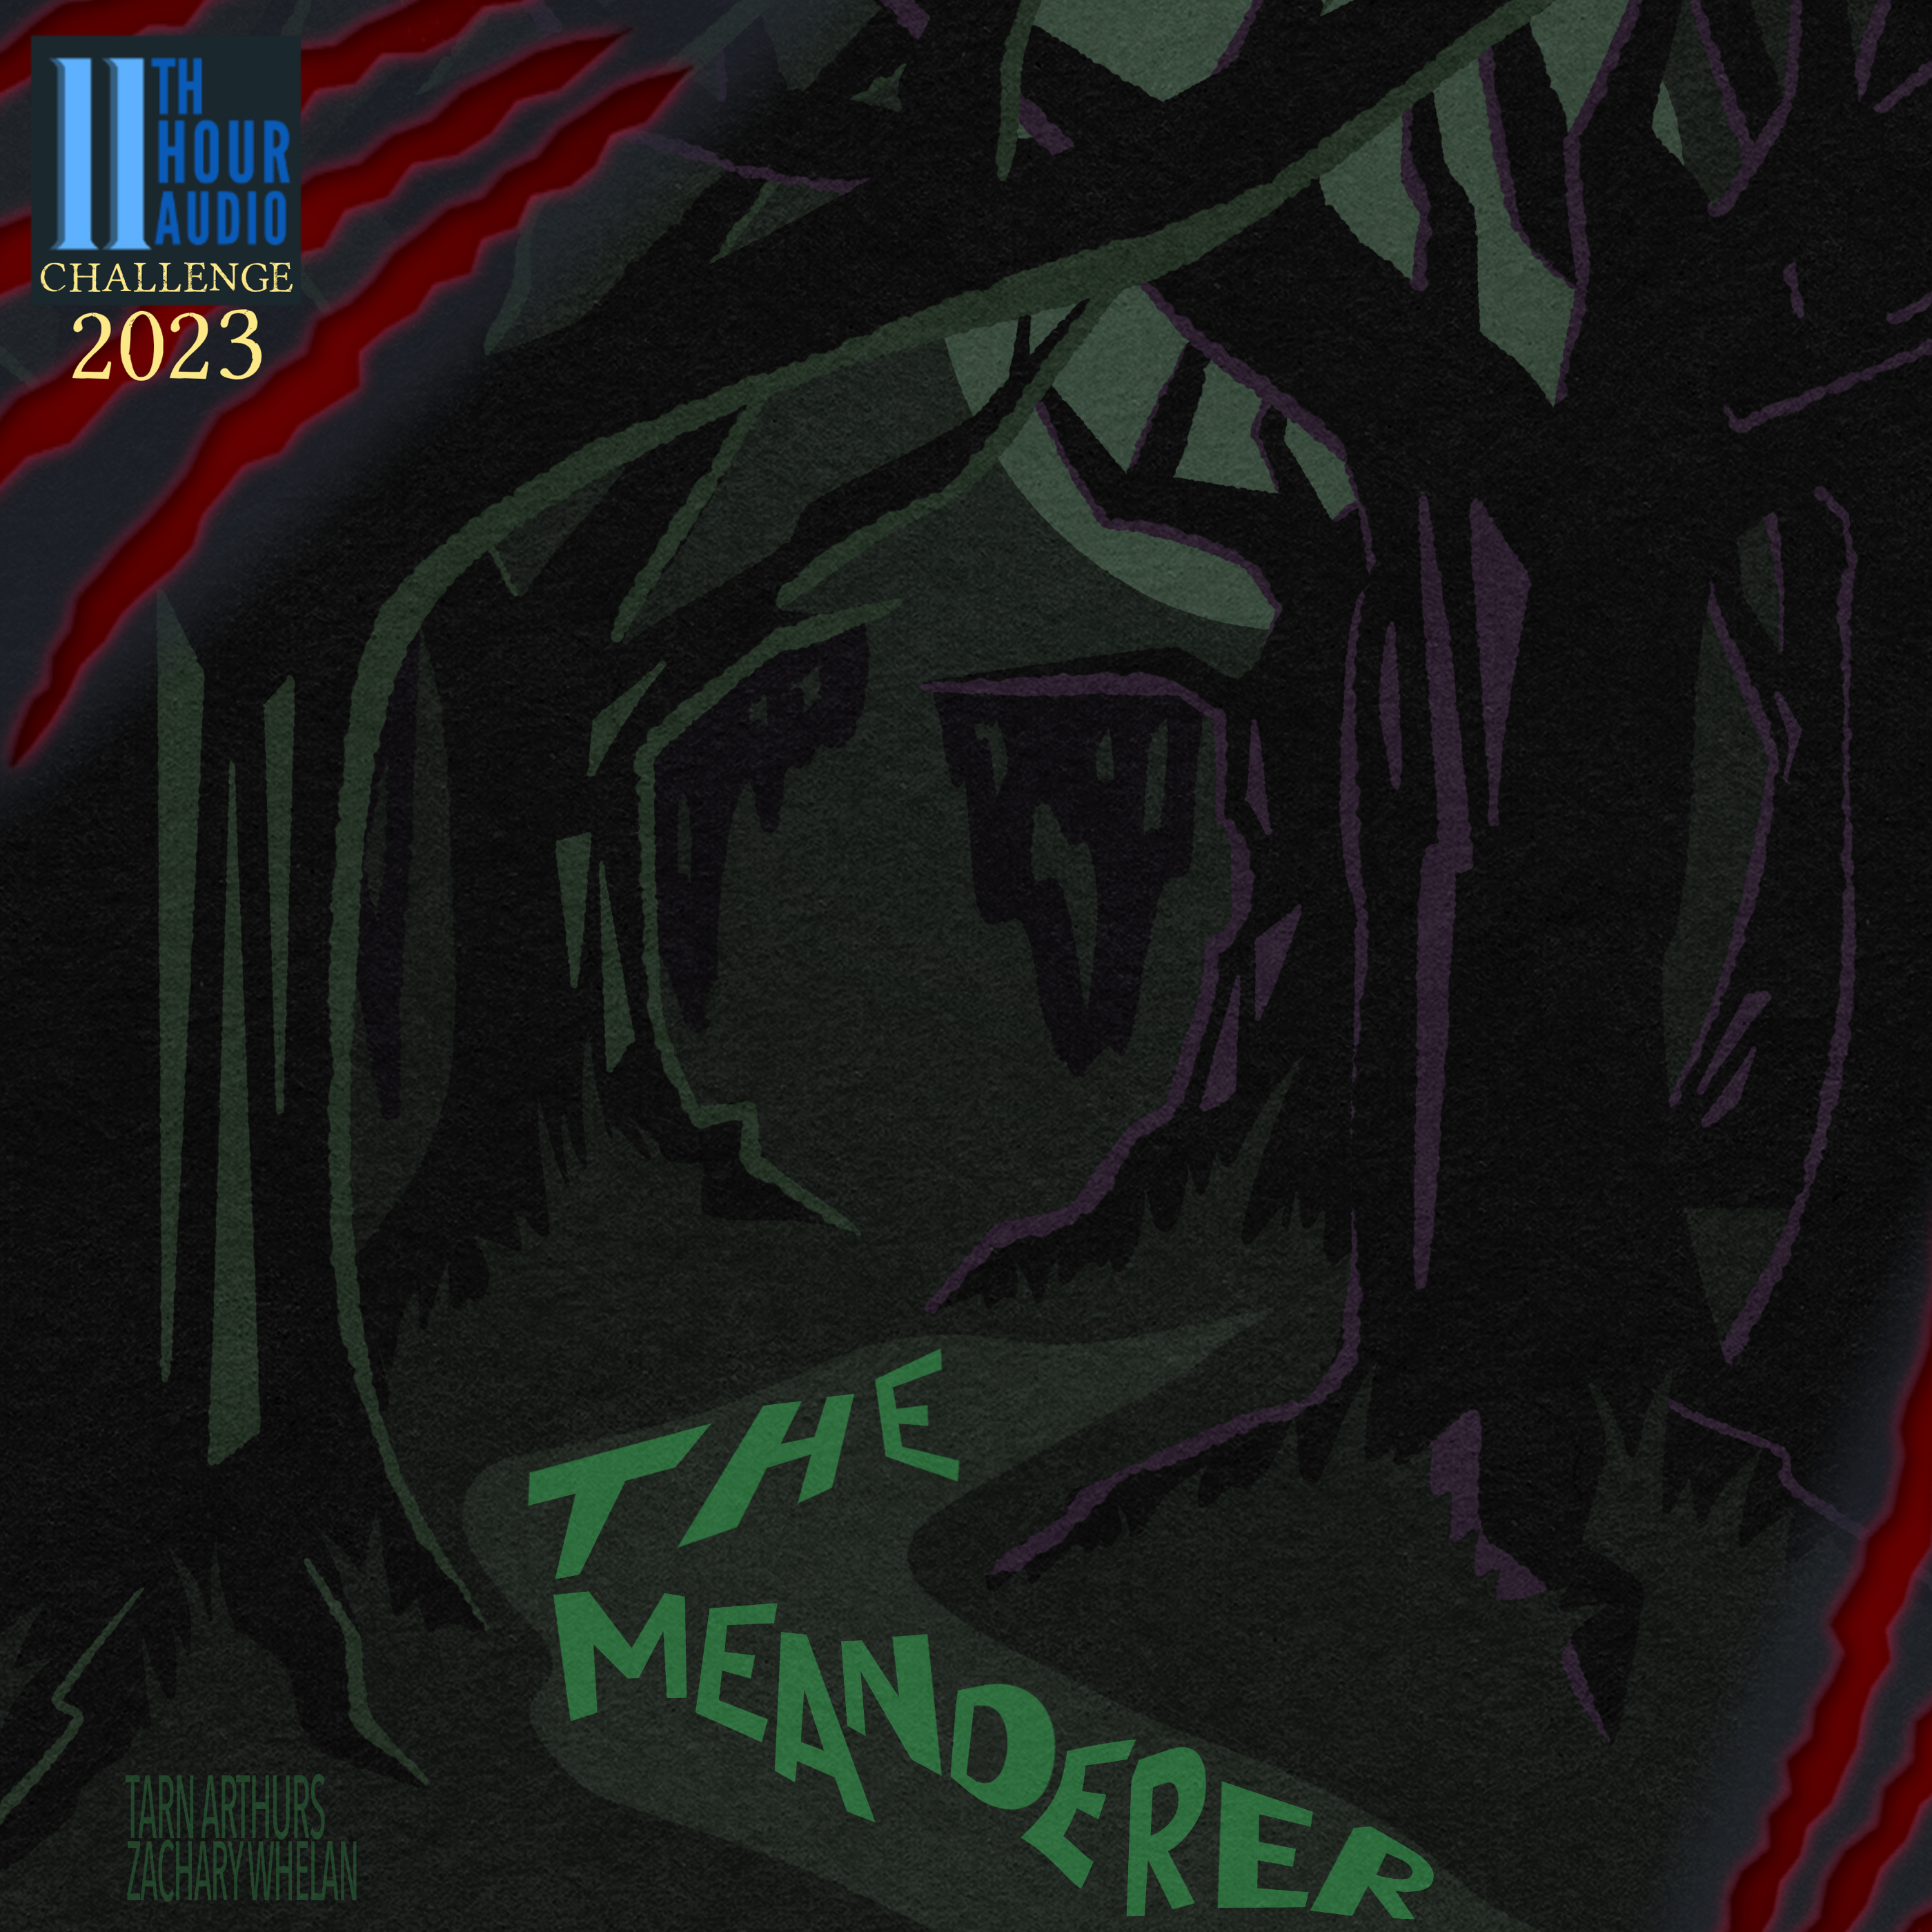 The Meanderer